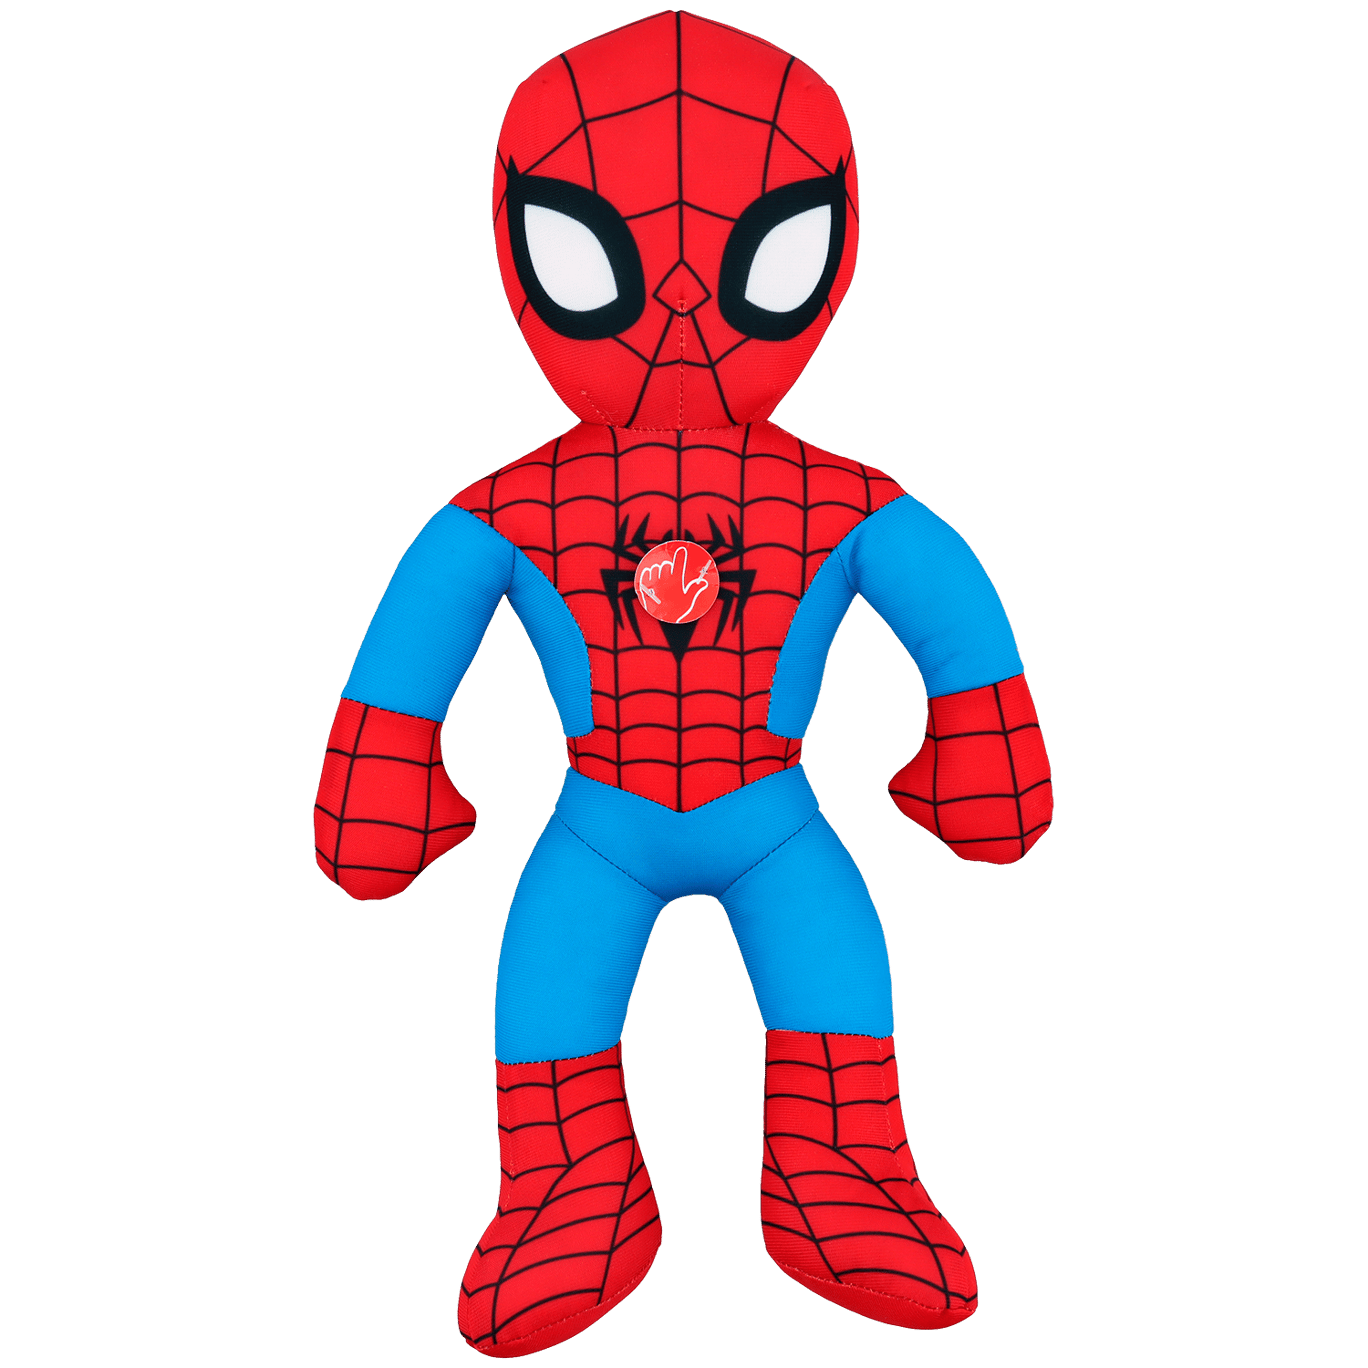 Veraangenamen Profetie Behoort Marvel Spider-Man knuffel | Action.com